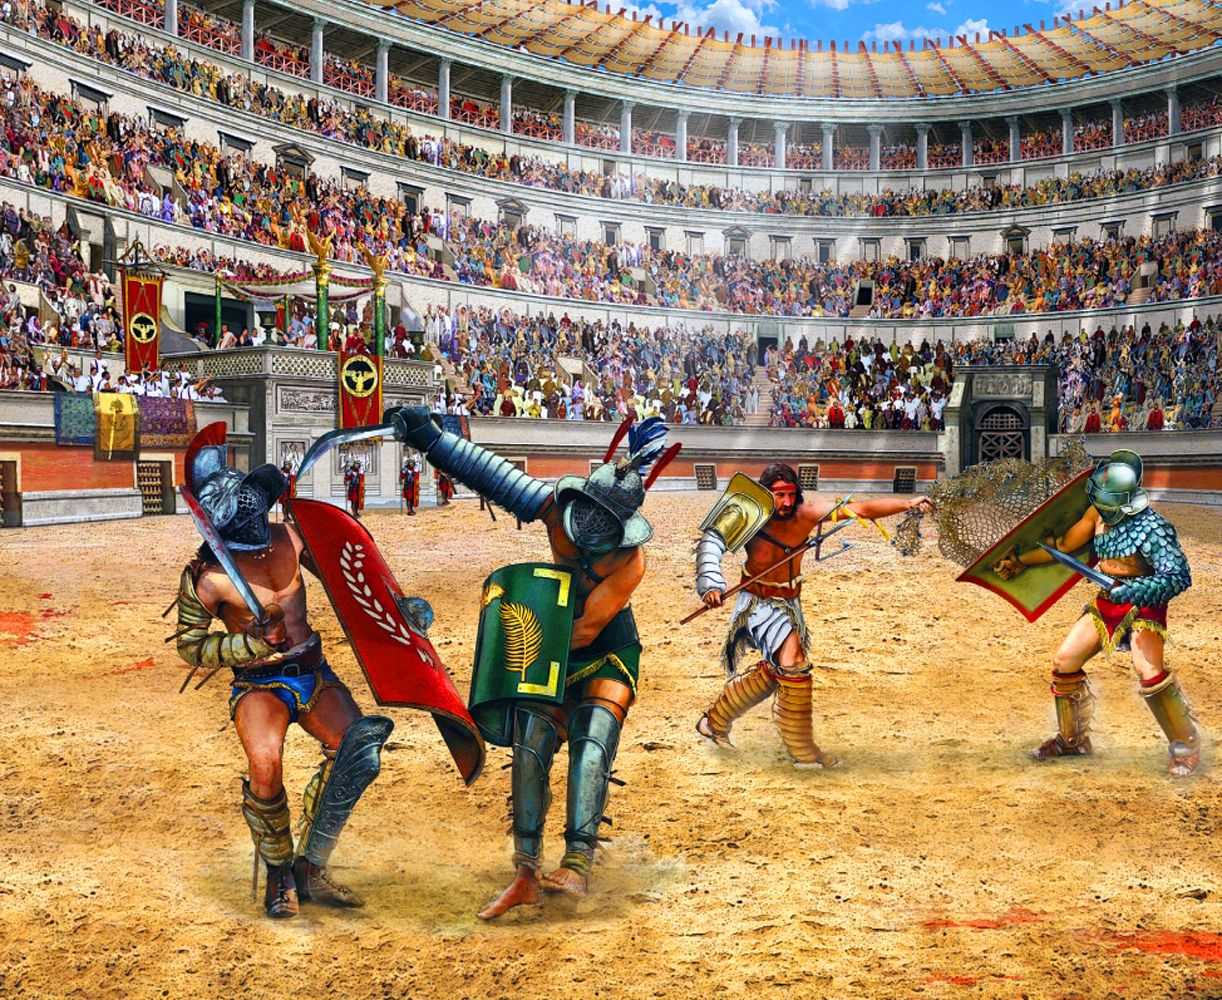 Почему гладиаторские бои были любимым зрелищем римлян